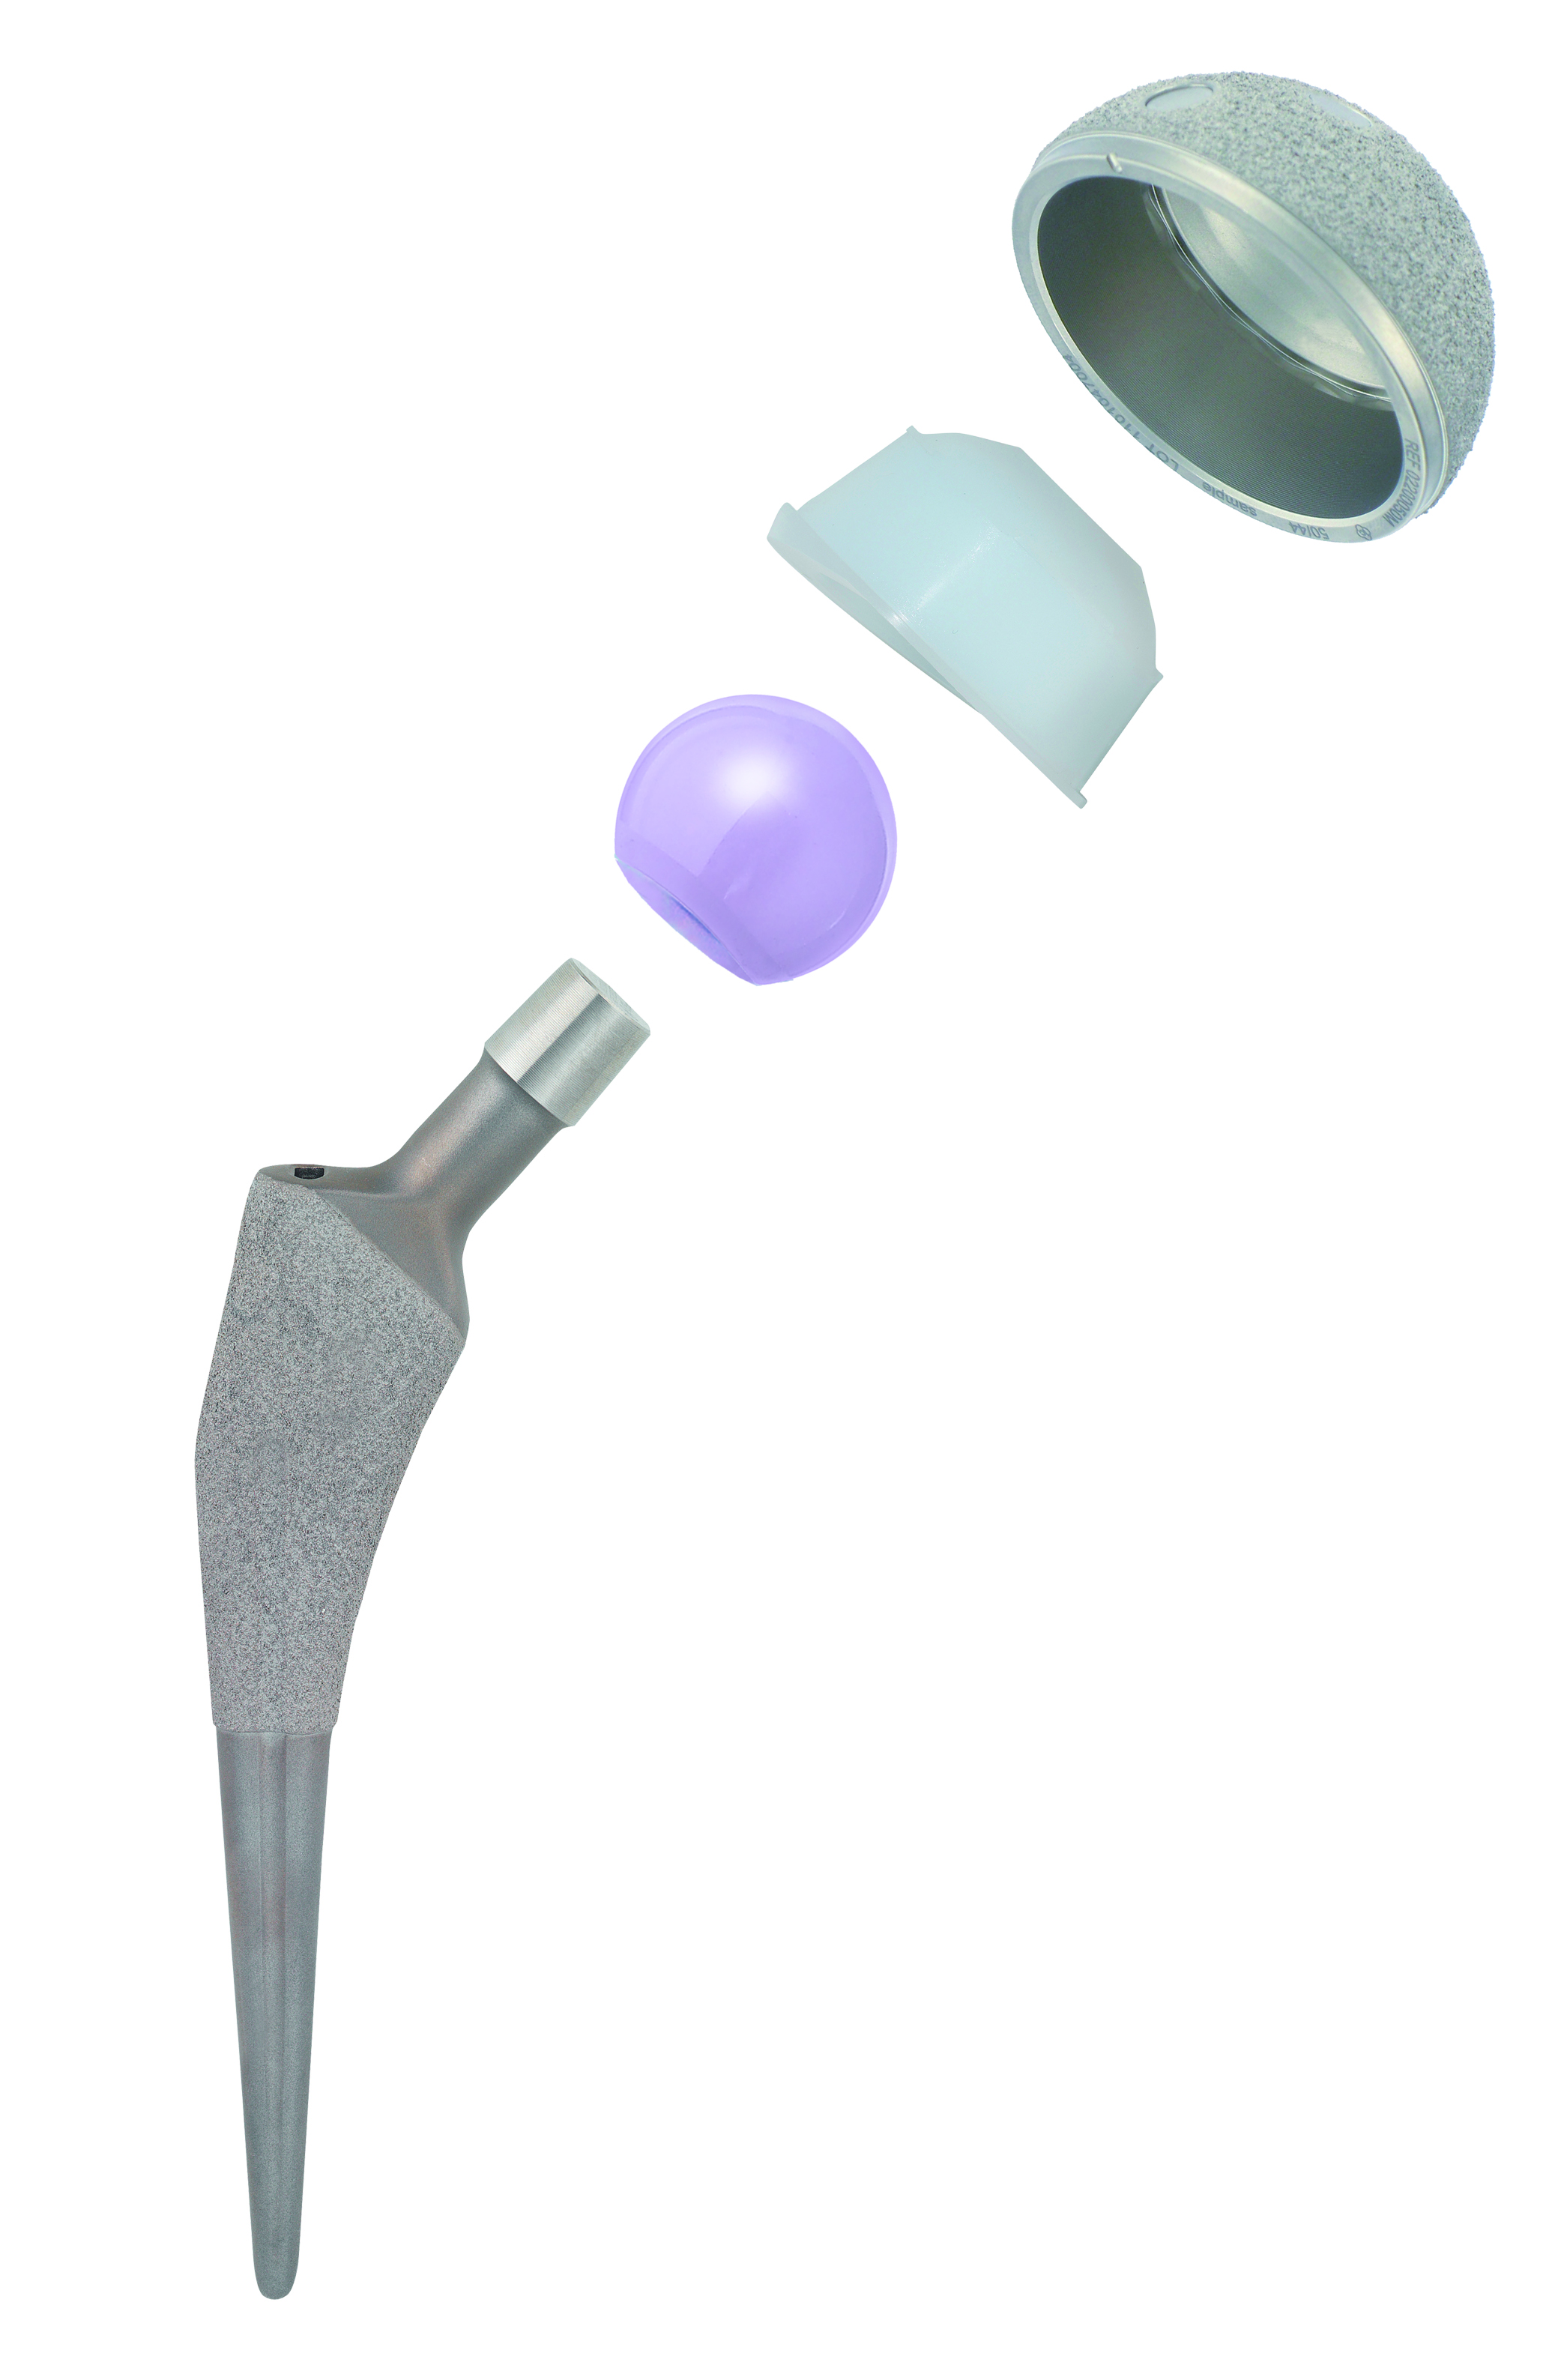 Строение тотального эндопротеза тазобедренного сустава- чашка (вертлужная впадина)с вкладышем, ножка и заменитель головки